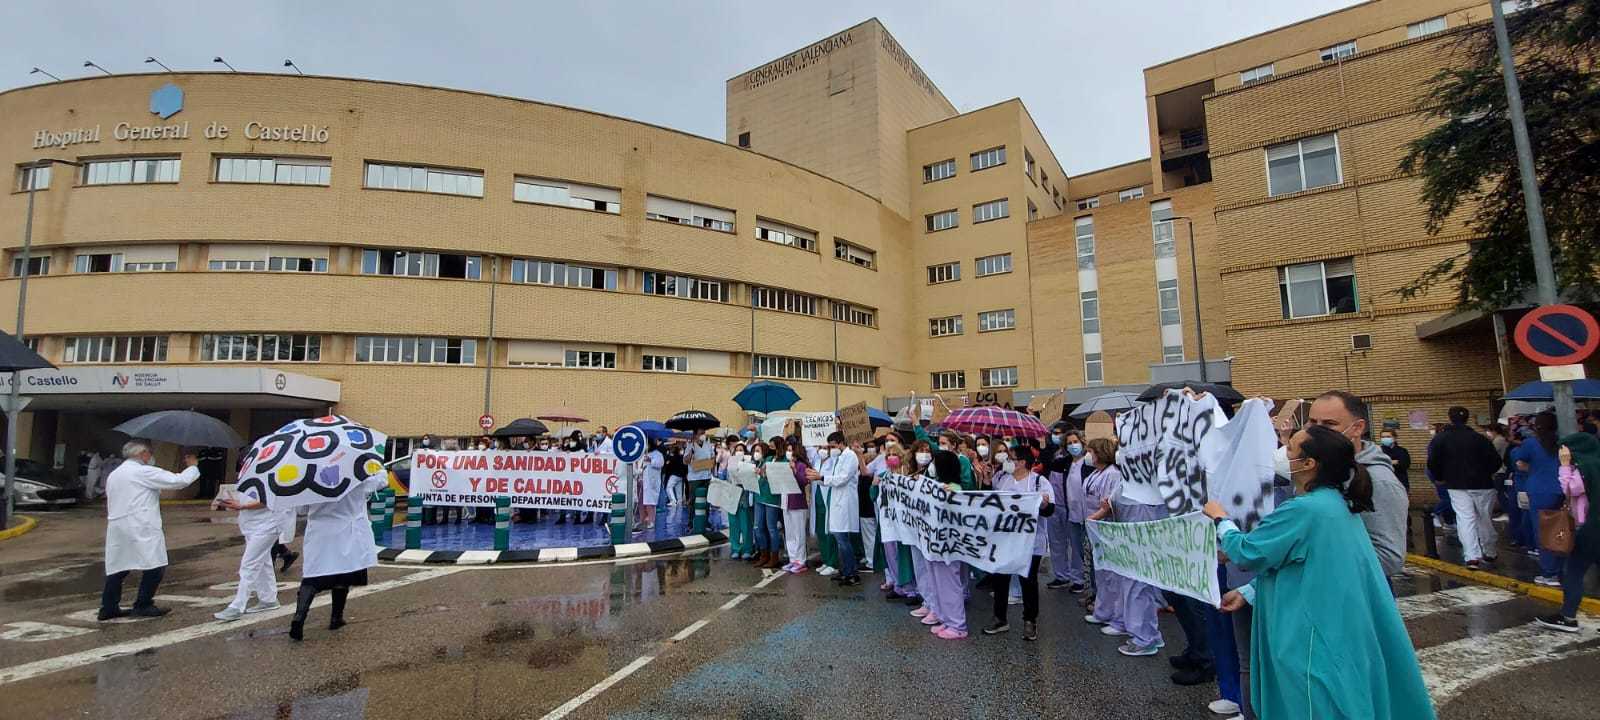 Protestas, este mircoles, de los sindicatos sanitarios en el Hospital General de Castelln.